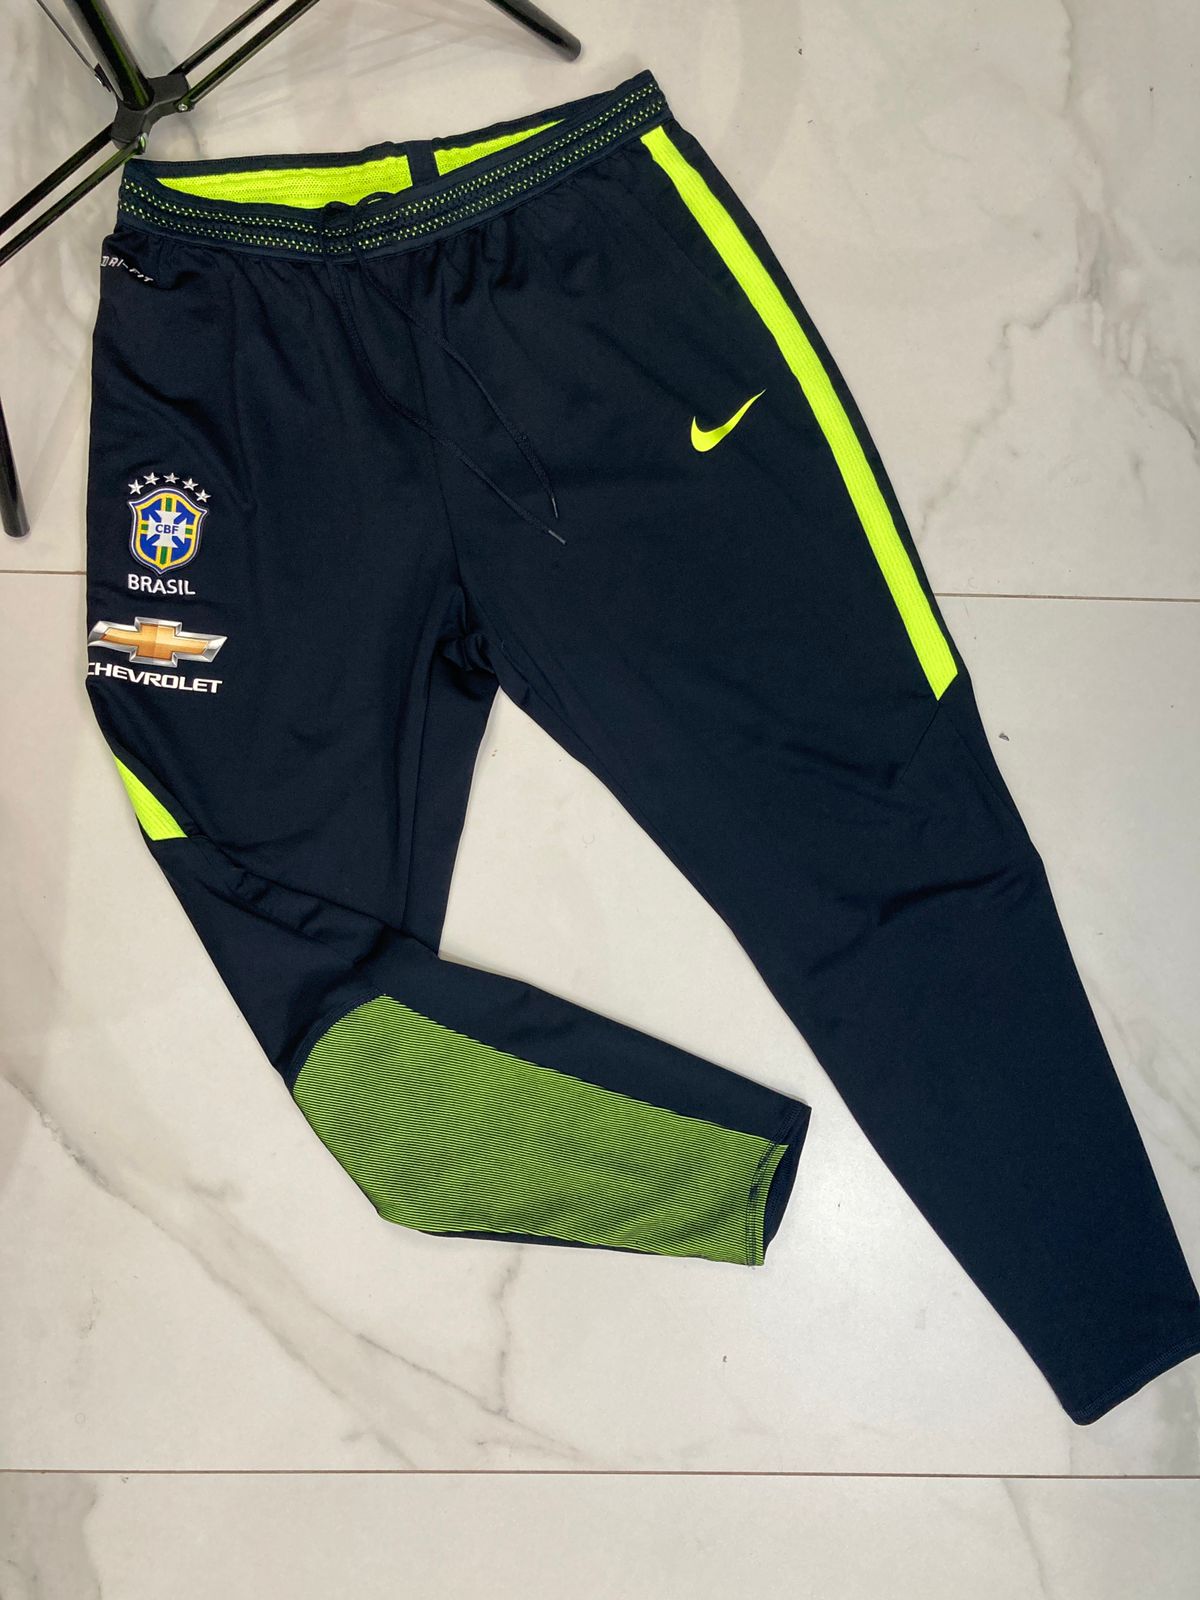 Calça da Seleção Brasileira Oficial Treino Nike 2016 - Paulinho Store